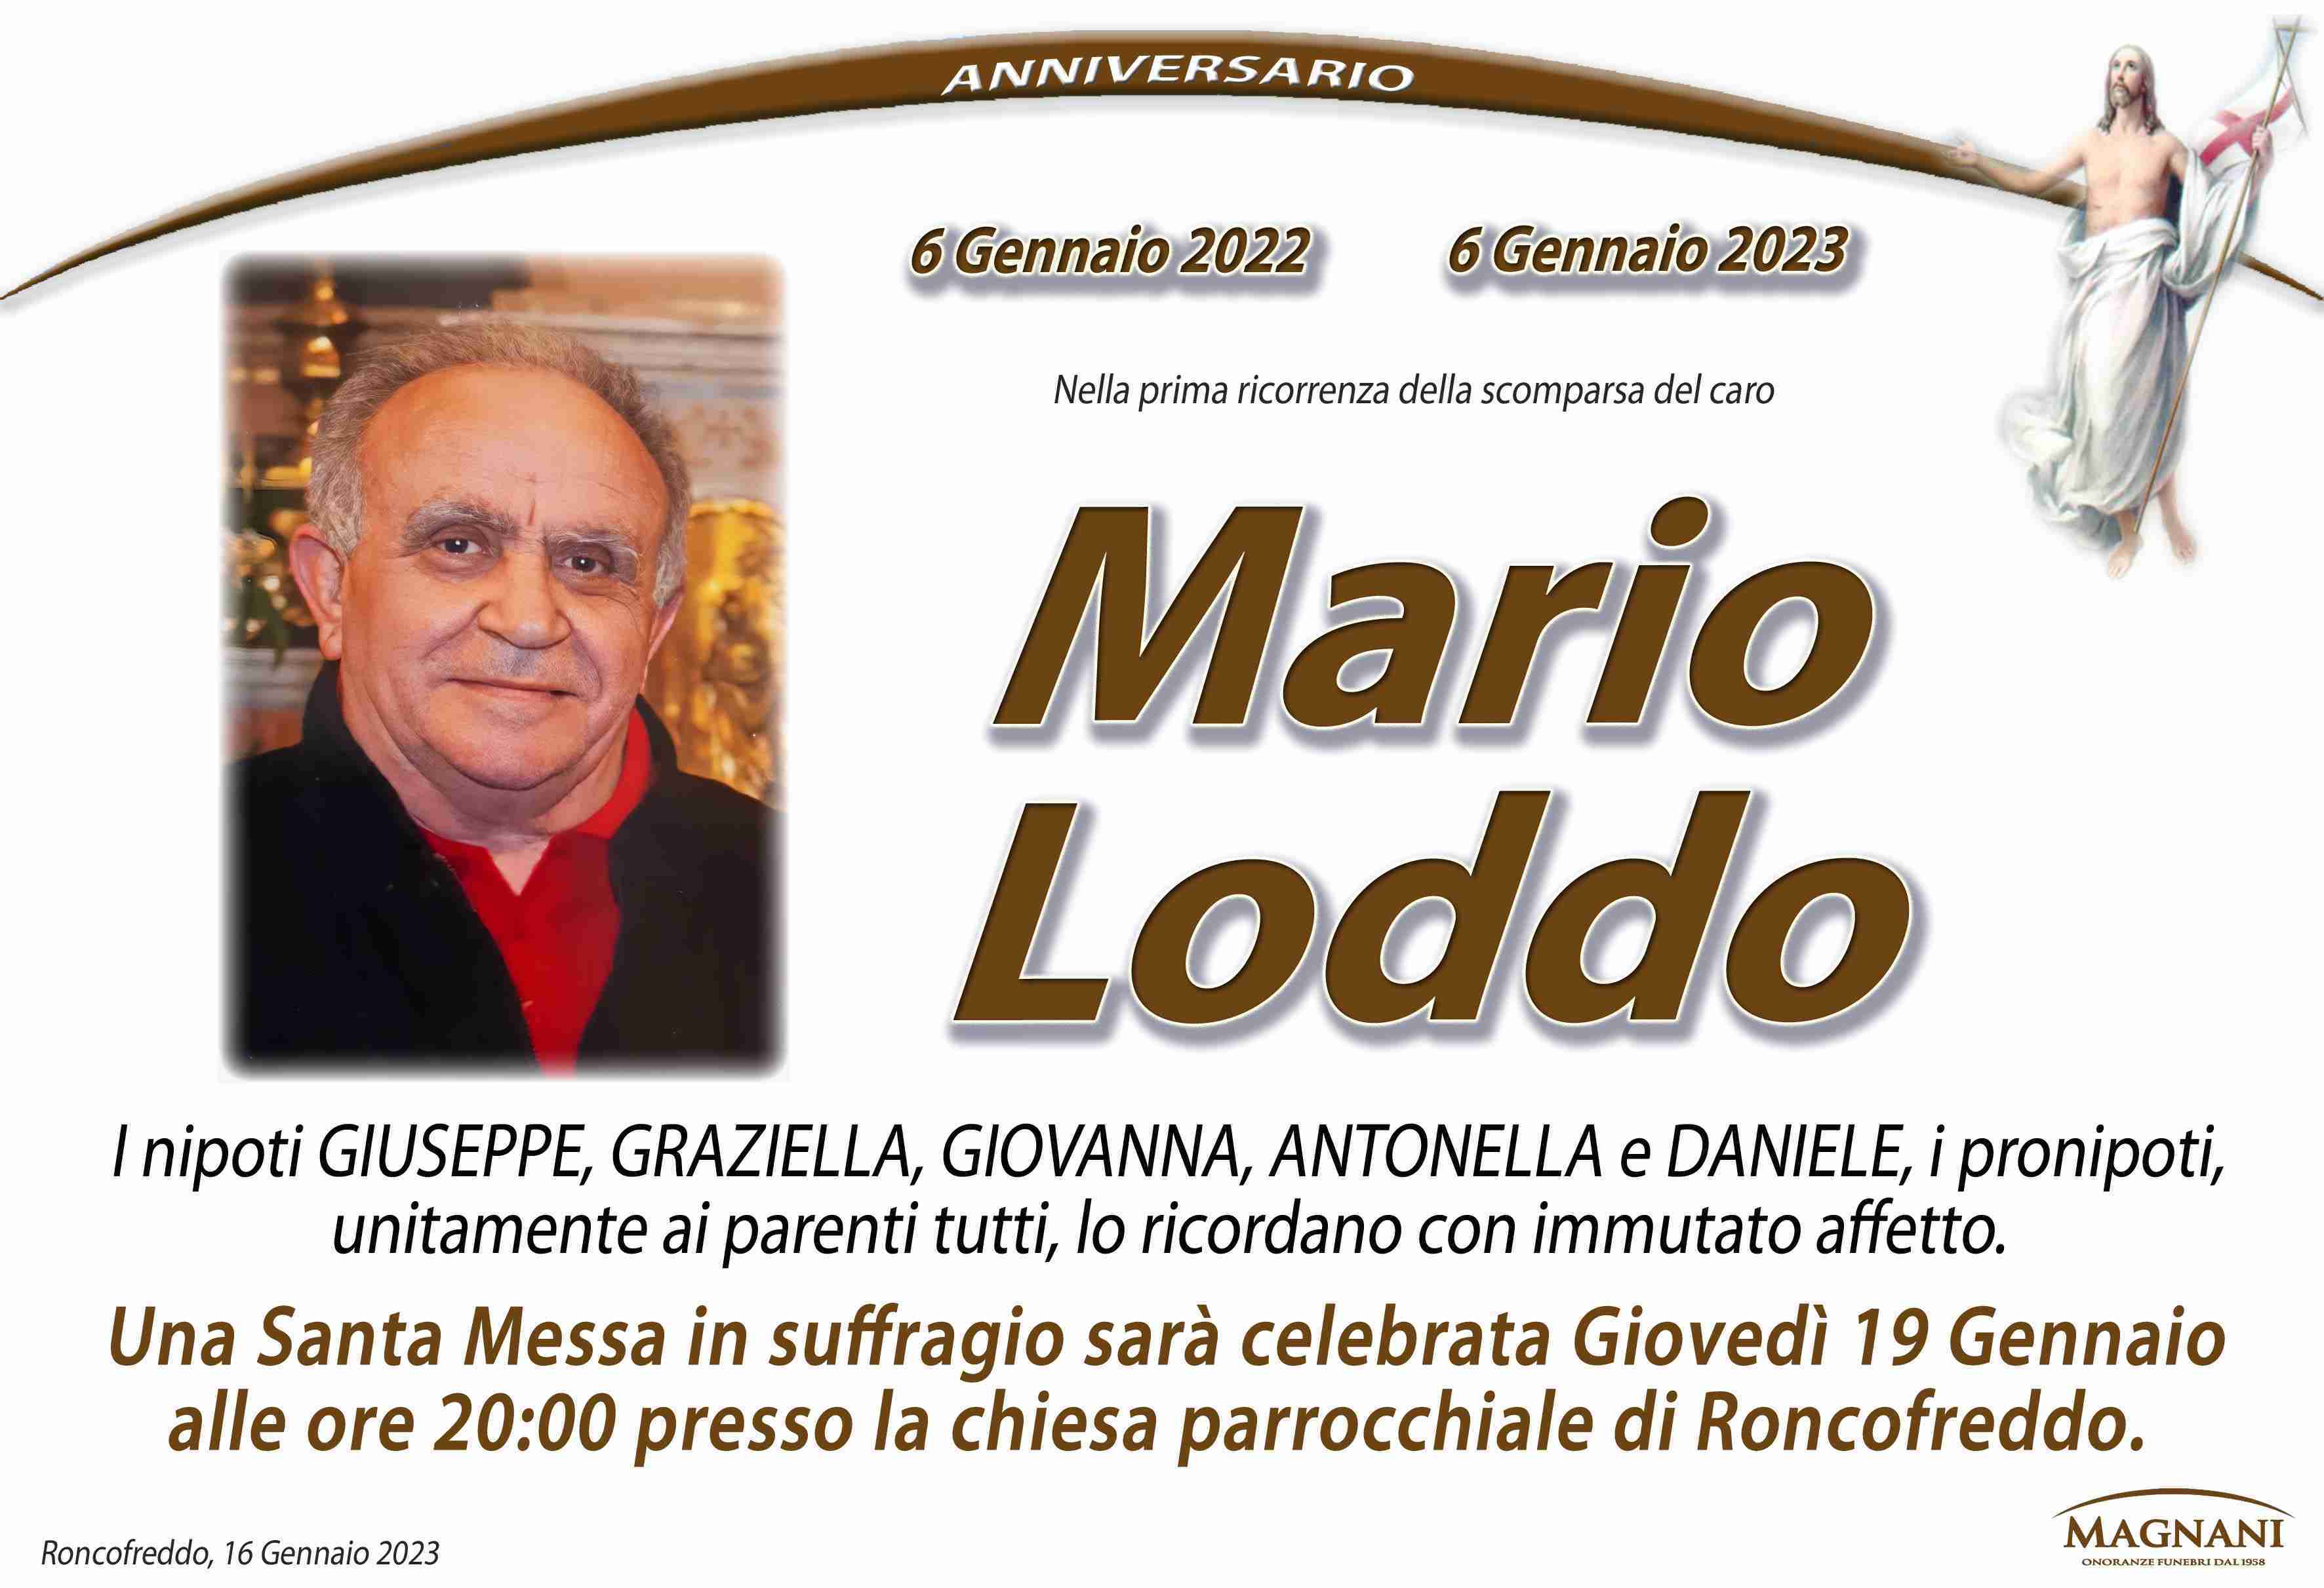 Mario Loddo